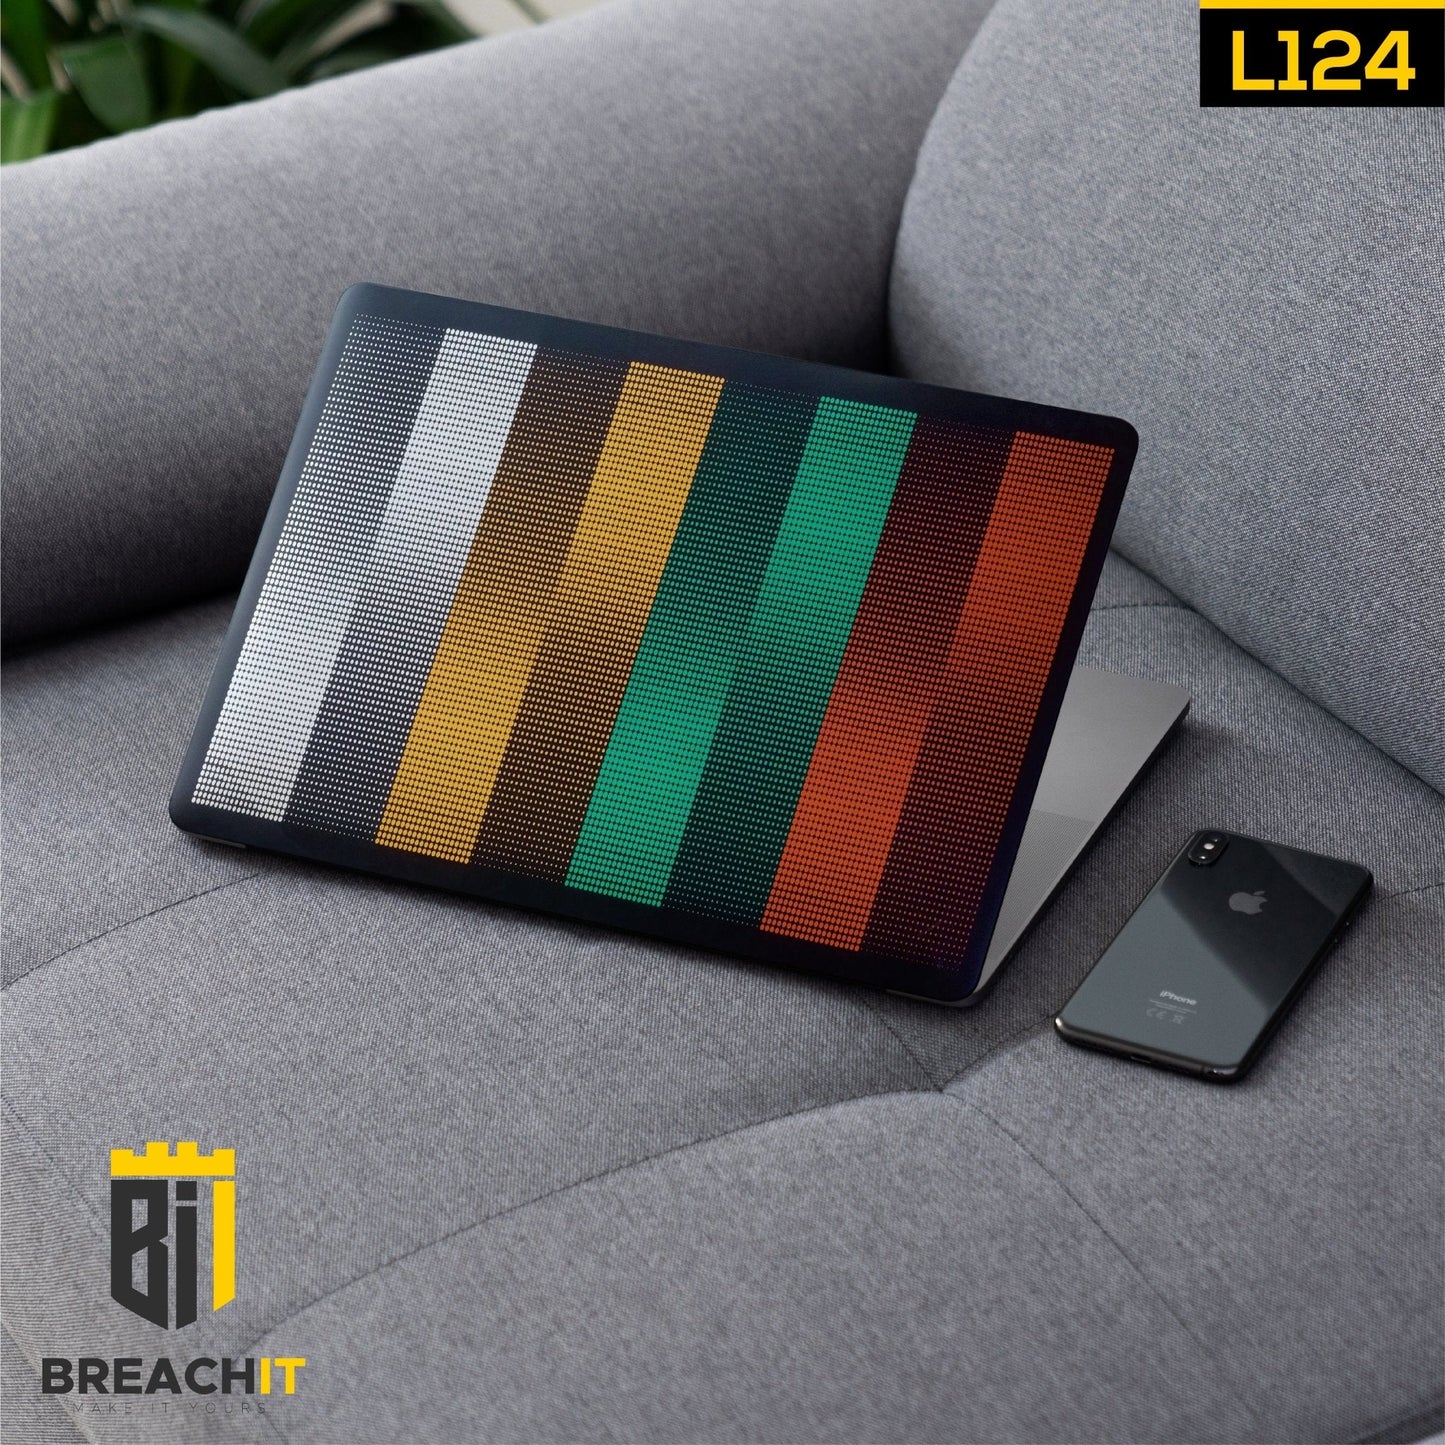 L124 Colorful Laptop Skin - BREACHIT